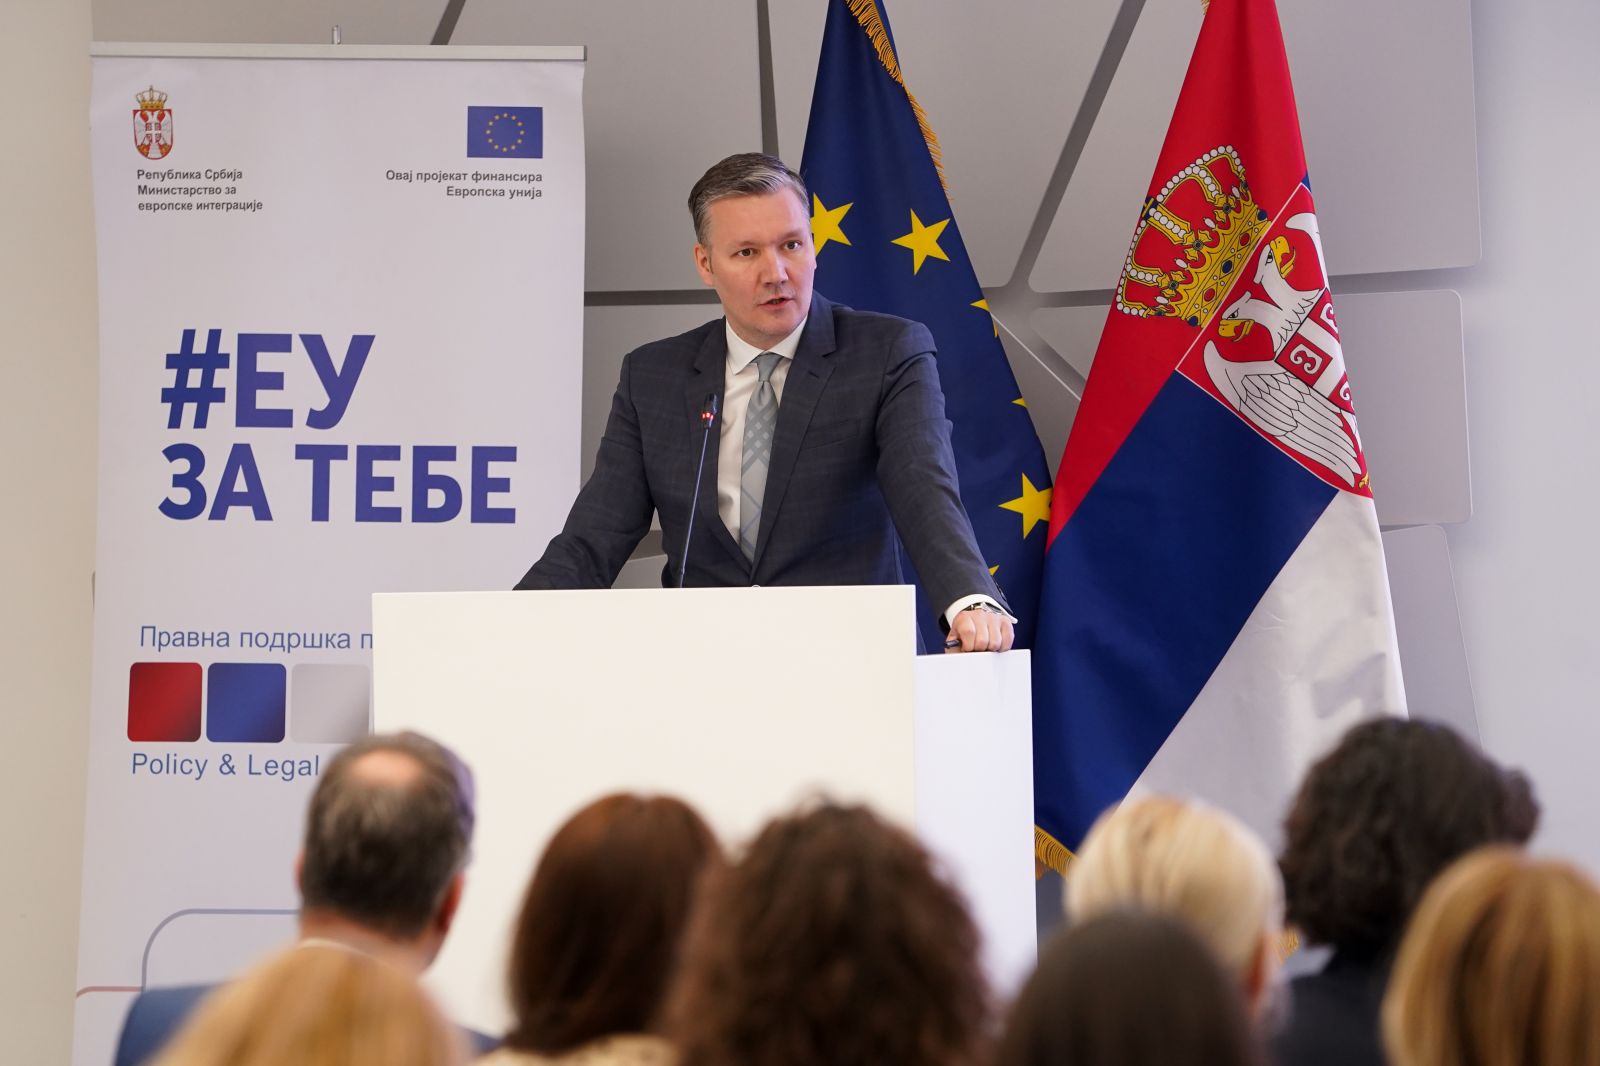 Gačević: Ukupna vrednost projekta Pravna podrška pregovorima 5,4 miliona evra